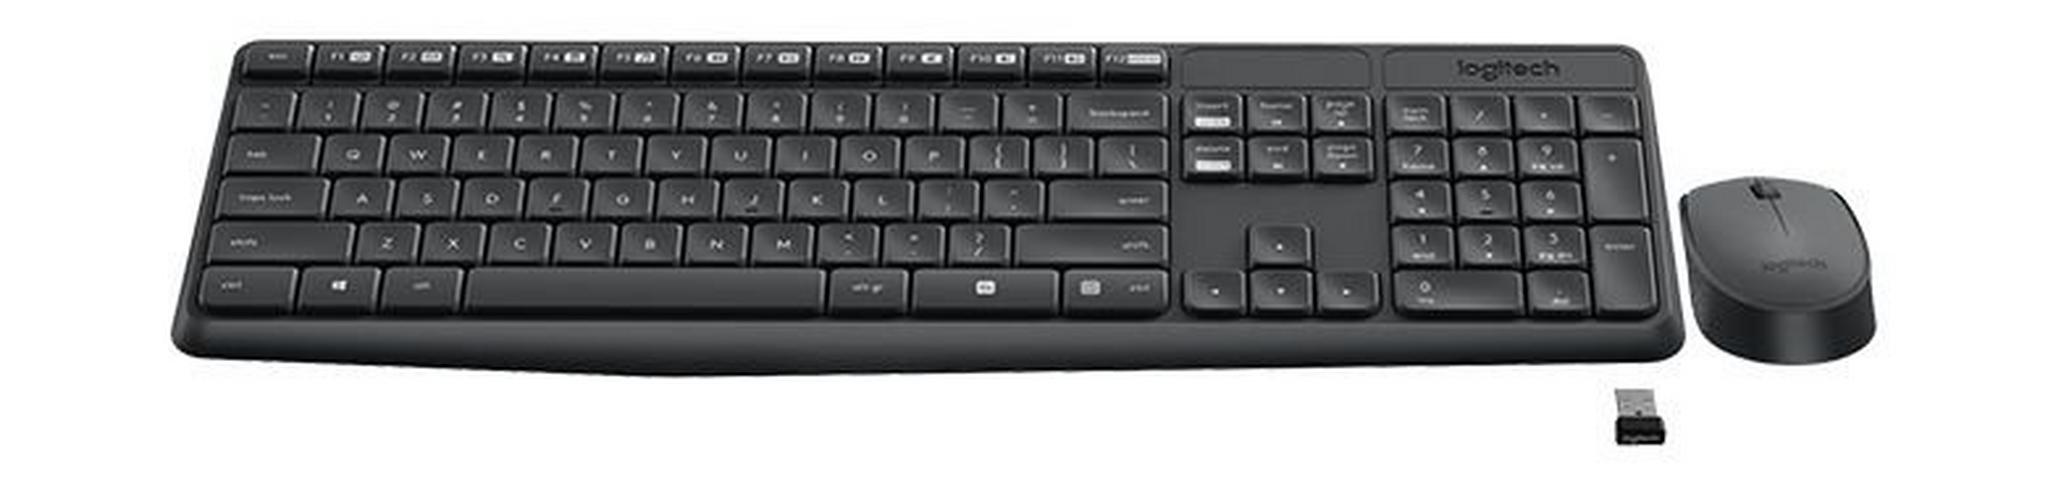 Logitech Wireless Keyboard, 920-007927 - Black